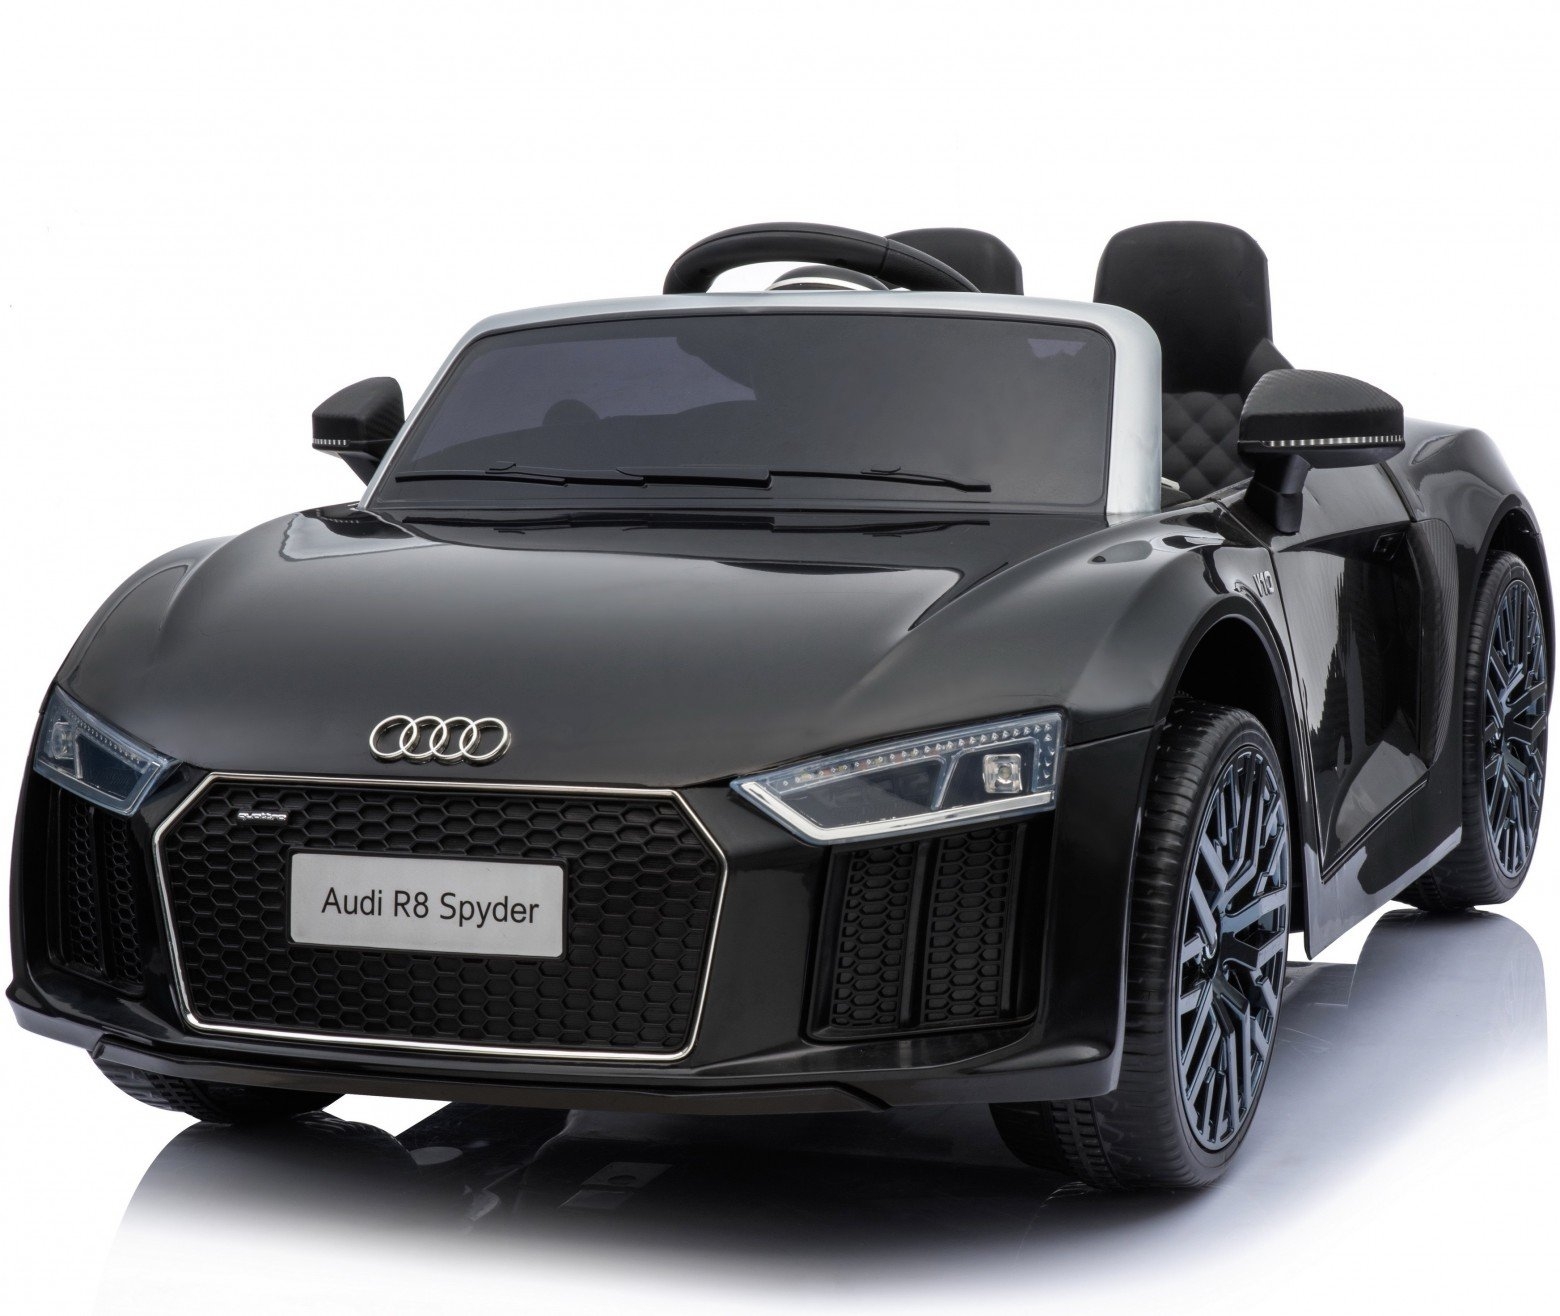 New Shape Licensed Audi R8 Spyder 12V ChildrenÛªs Electric Ride On Toy Car – Black